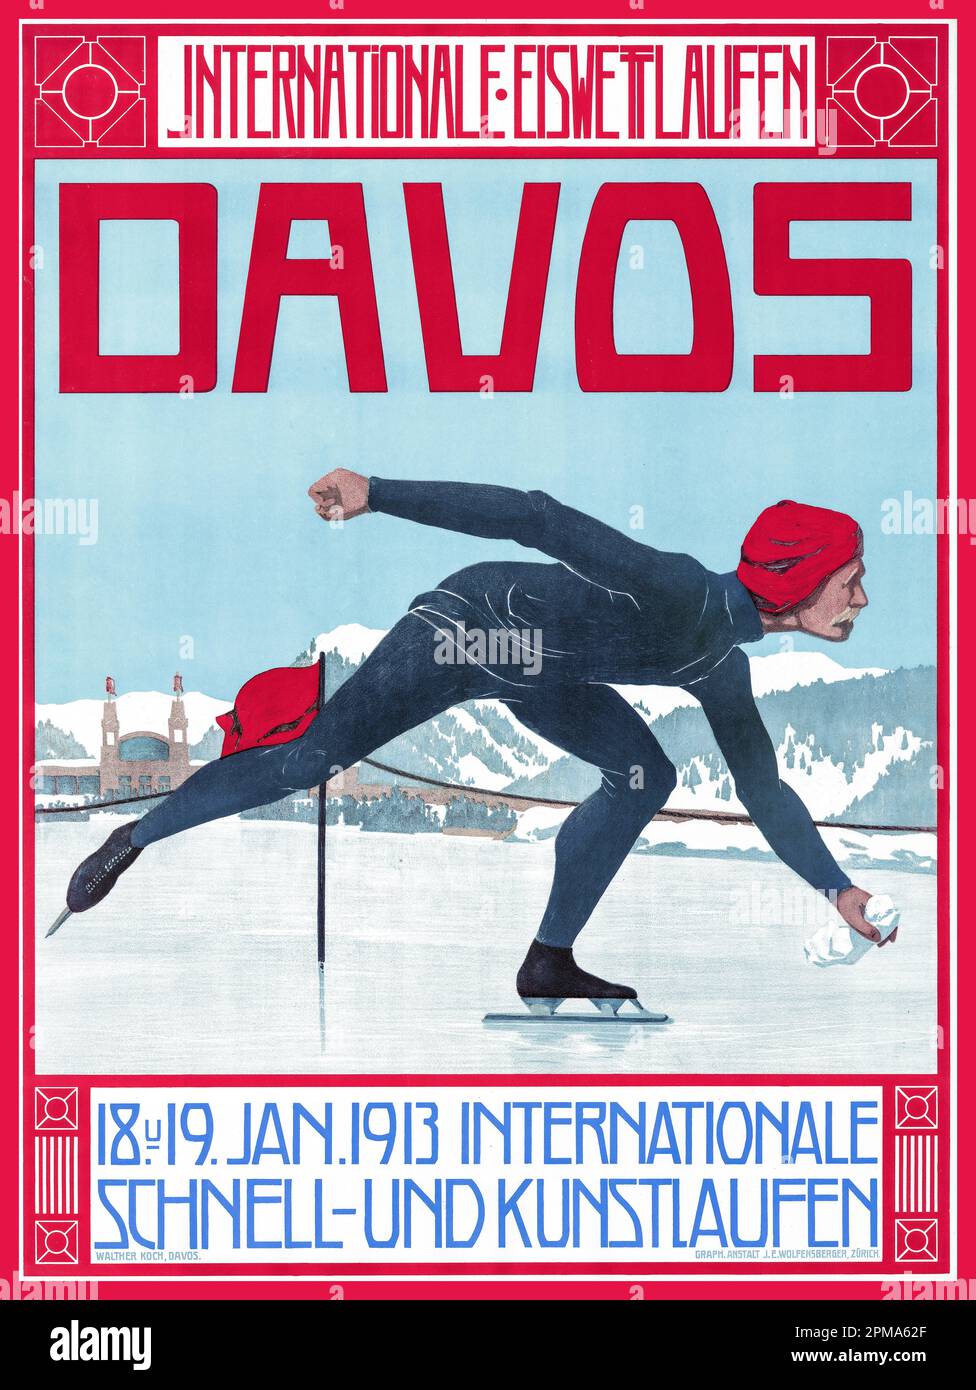 DAVOS Vintage 1900er Wintersport Poster Lithograph Davos - International Iceb Skating, 18. Und 19. Januar 1913 Internationaler Speed- und Eiskunstlauf Künstler Walther Koch (1875-1915) Davos Schweiz Stockfoto